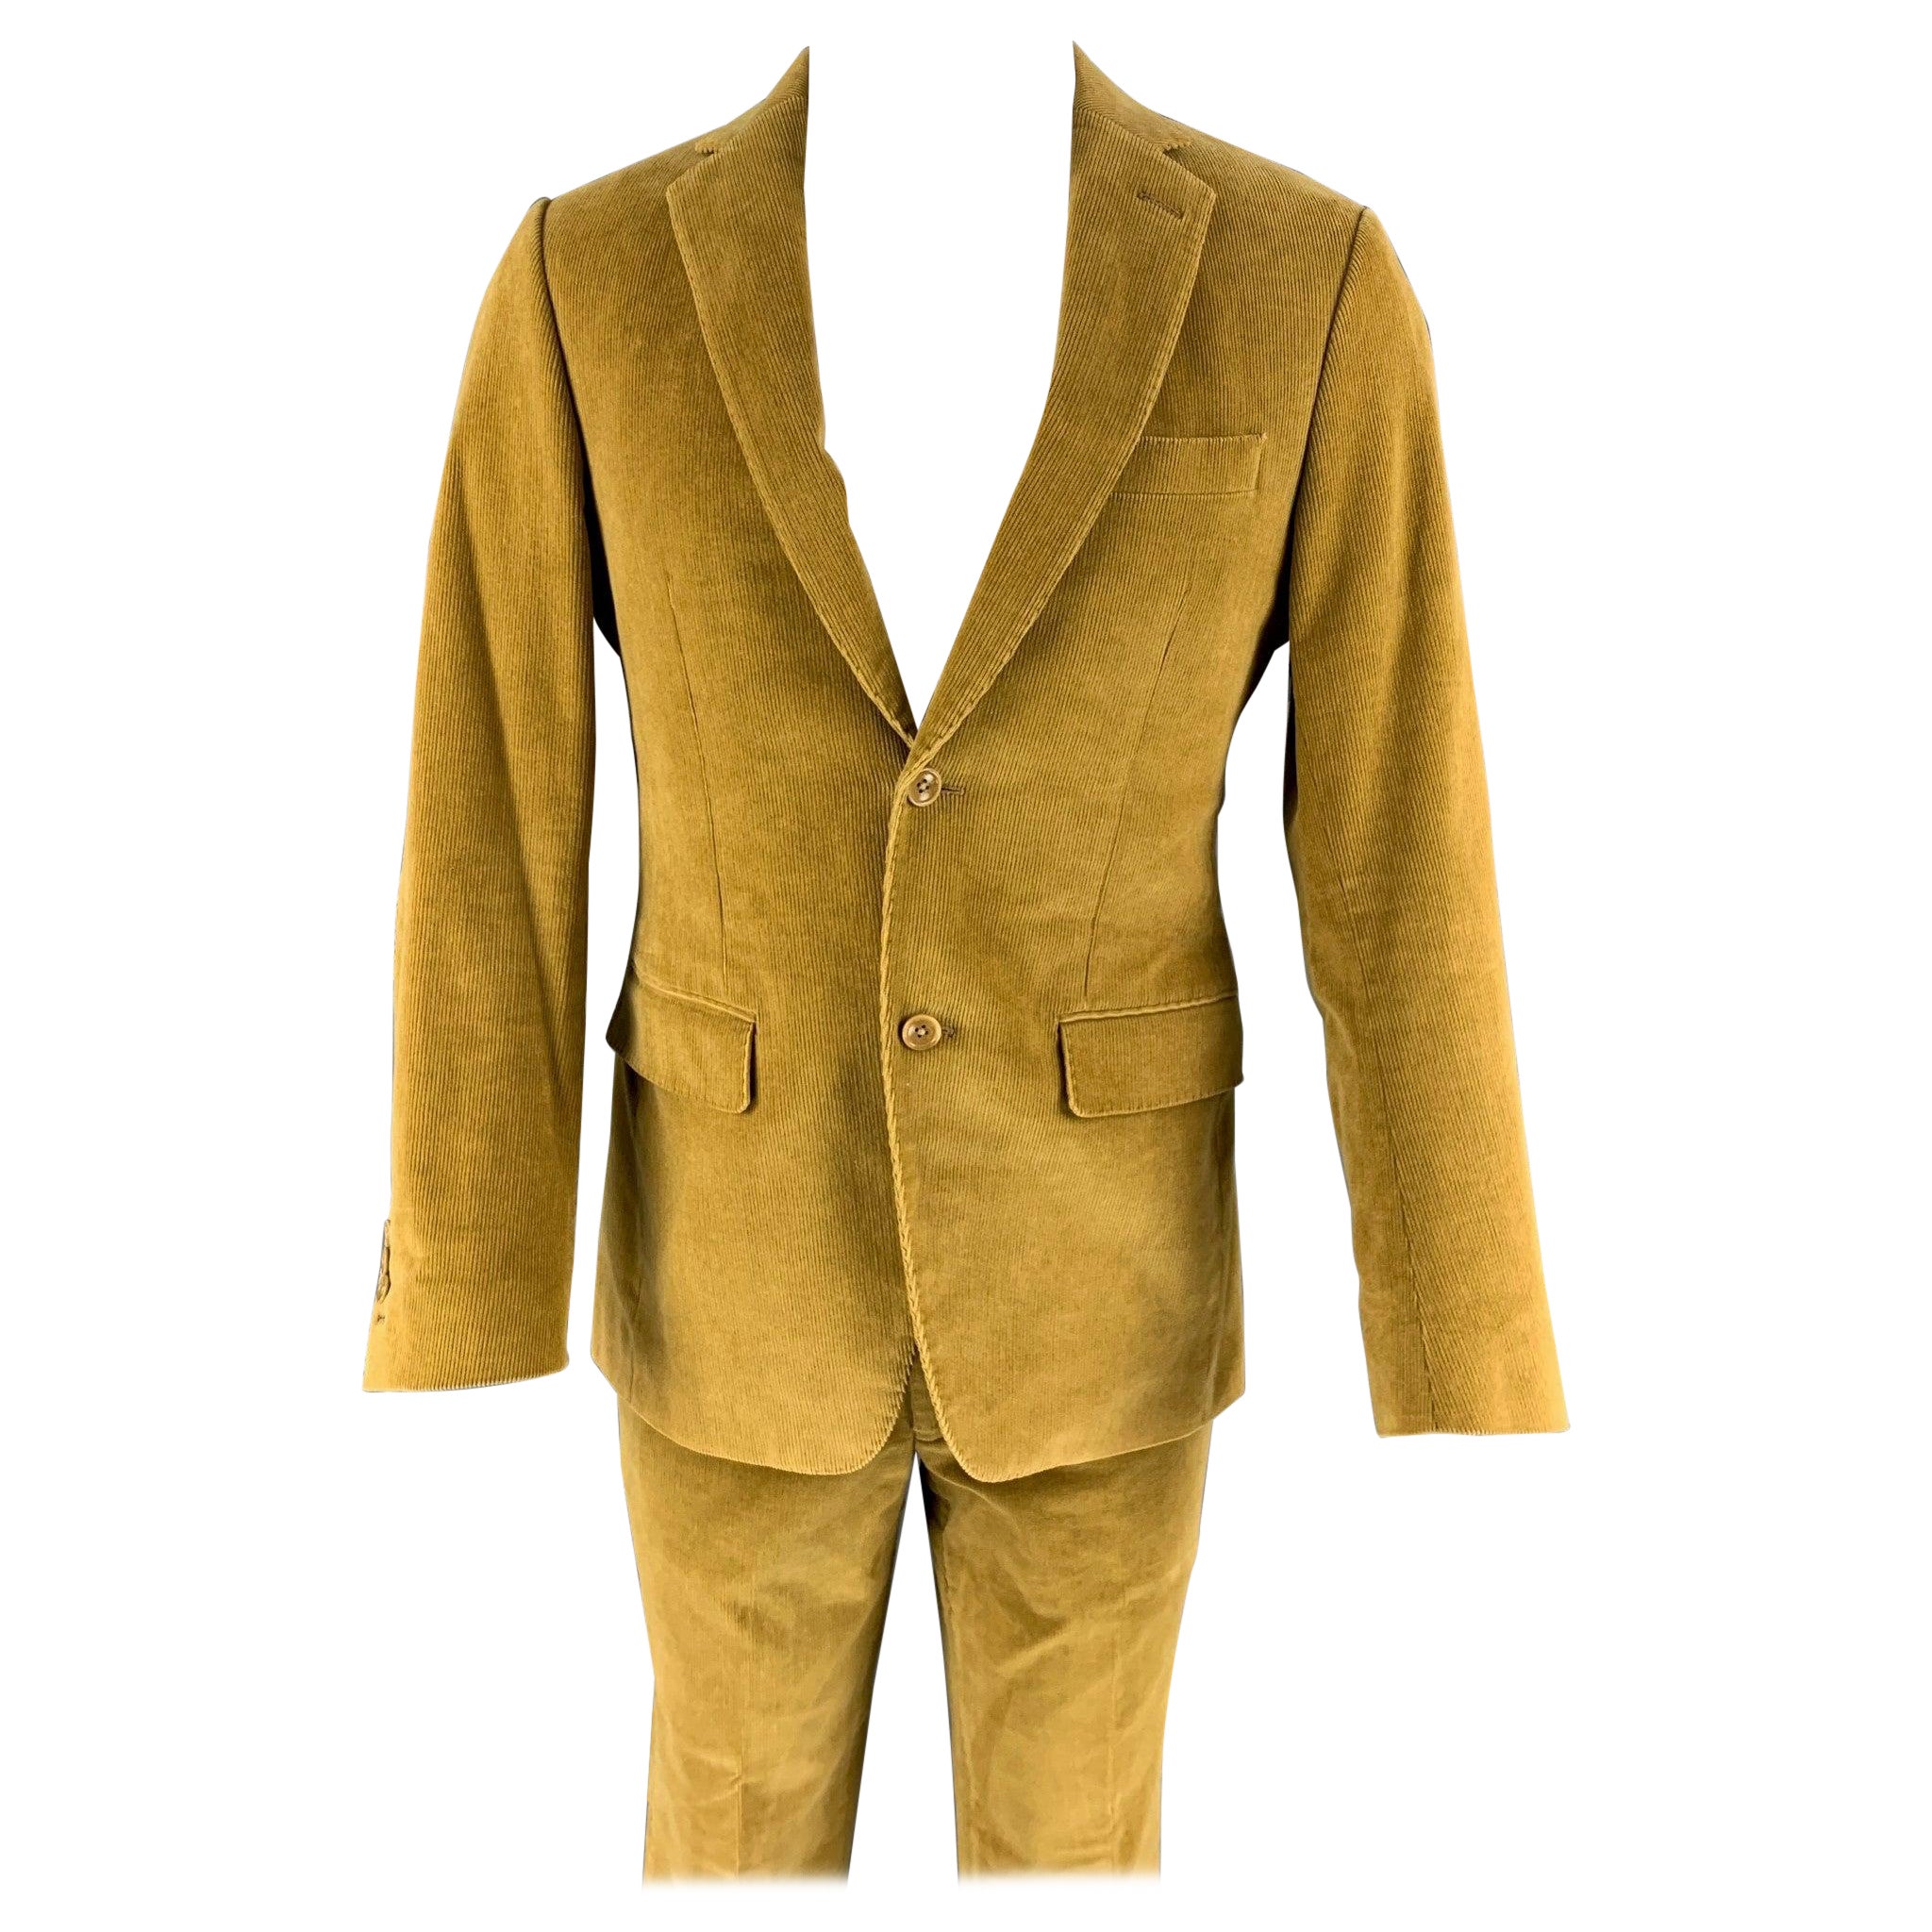 SAKS FIFTH AVENUE Size 40 Yellow Corduroy Notch Lapel Suit For Sale